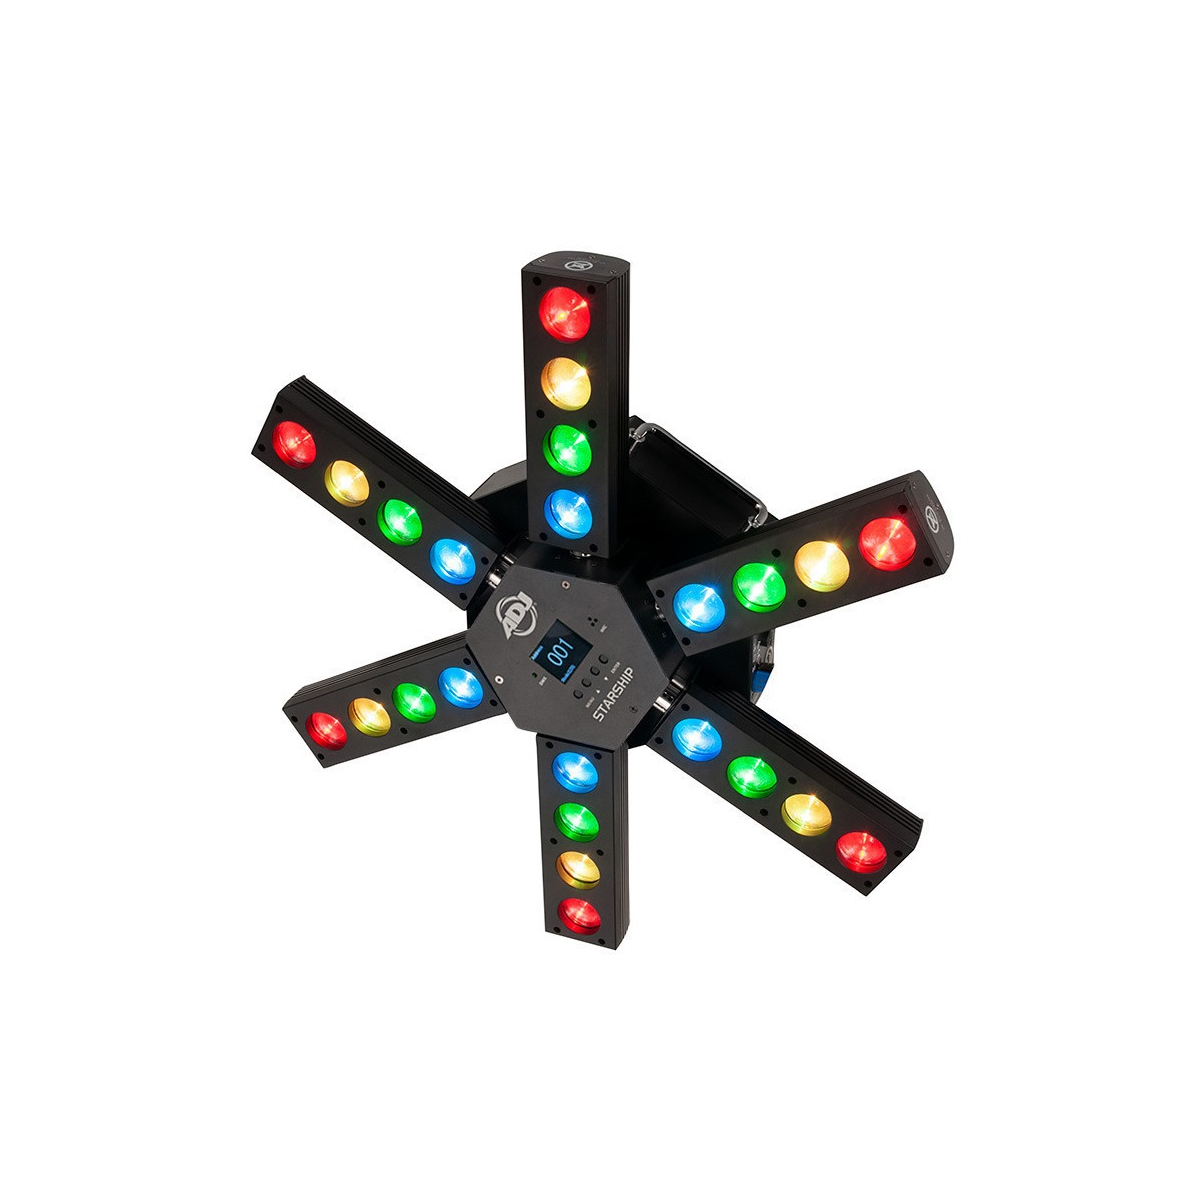 Jeux de lumière LED - ADJ - Starship